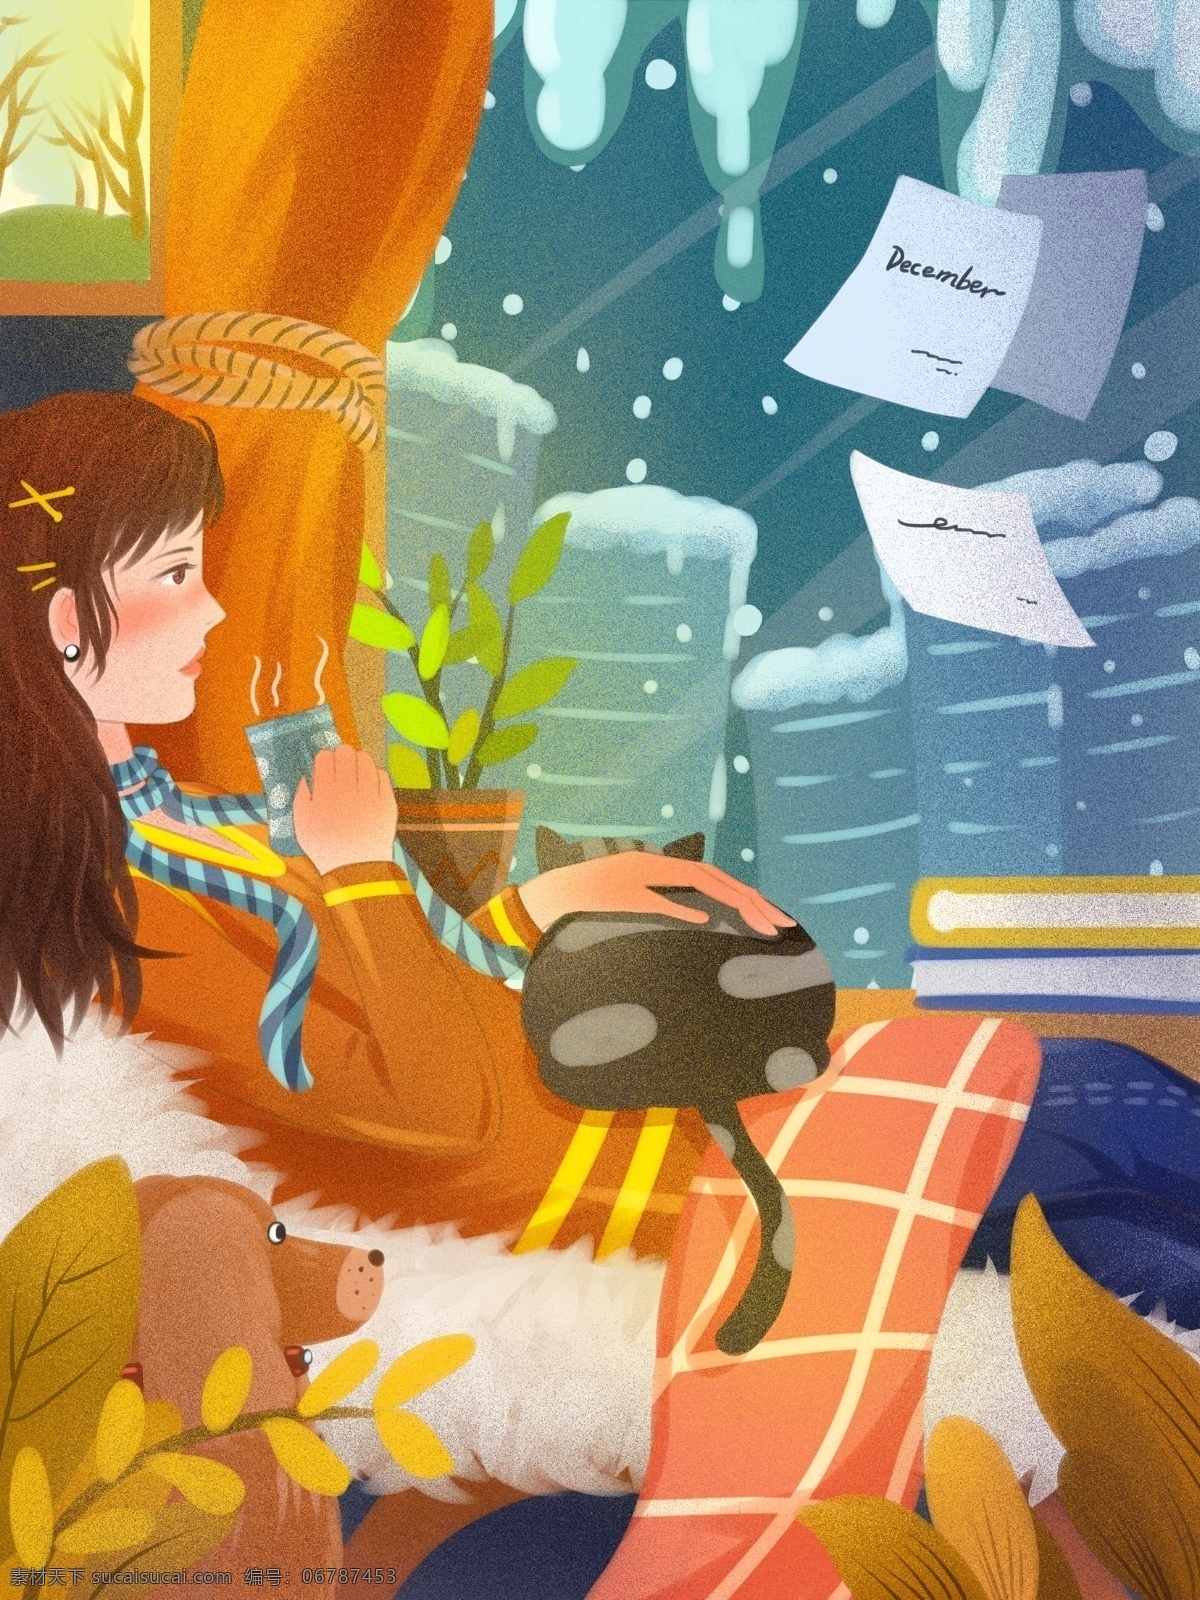 二十四节气 冬至 都市 雪夜 宅 在家 中 女子 下雪 楼房 猫 植物 高层 毛毯 温暖室内 狗 肌理写实 喝咖啡